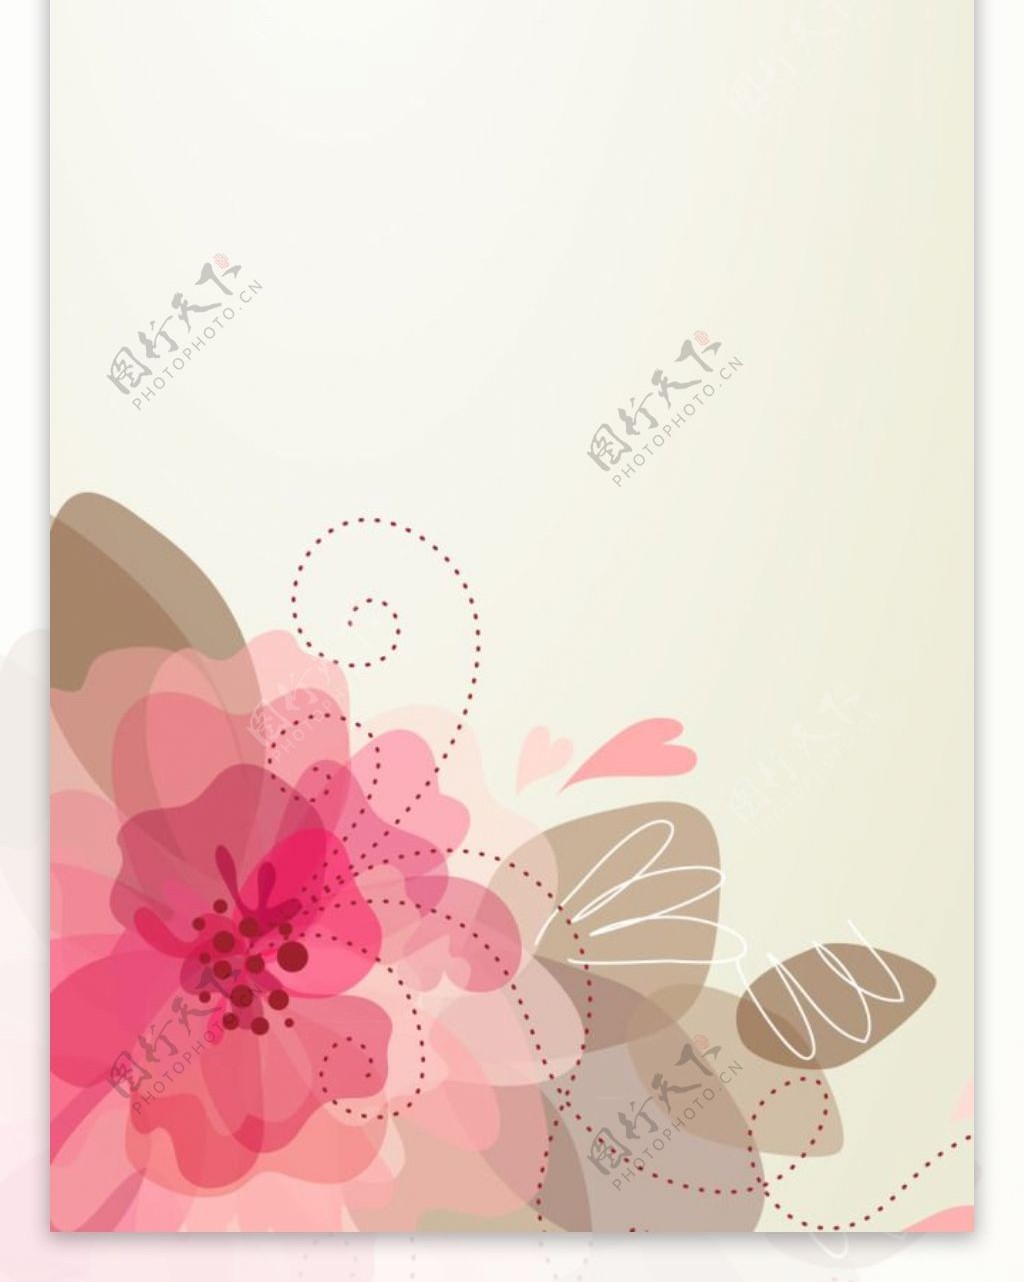 简单精美粉色花儿展架设计模板素材画面